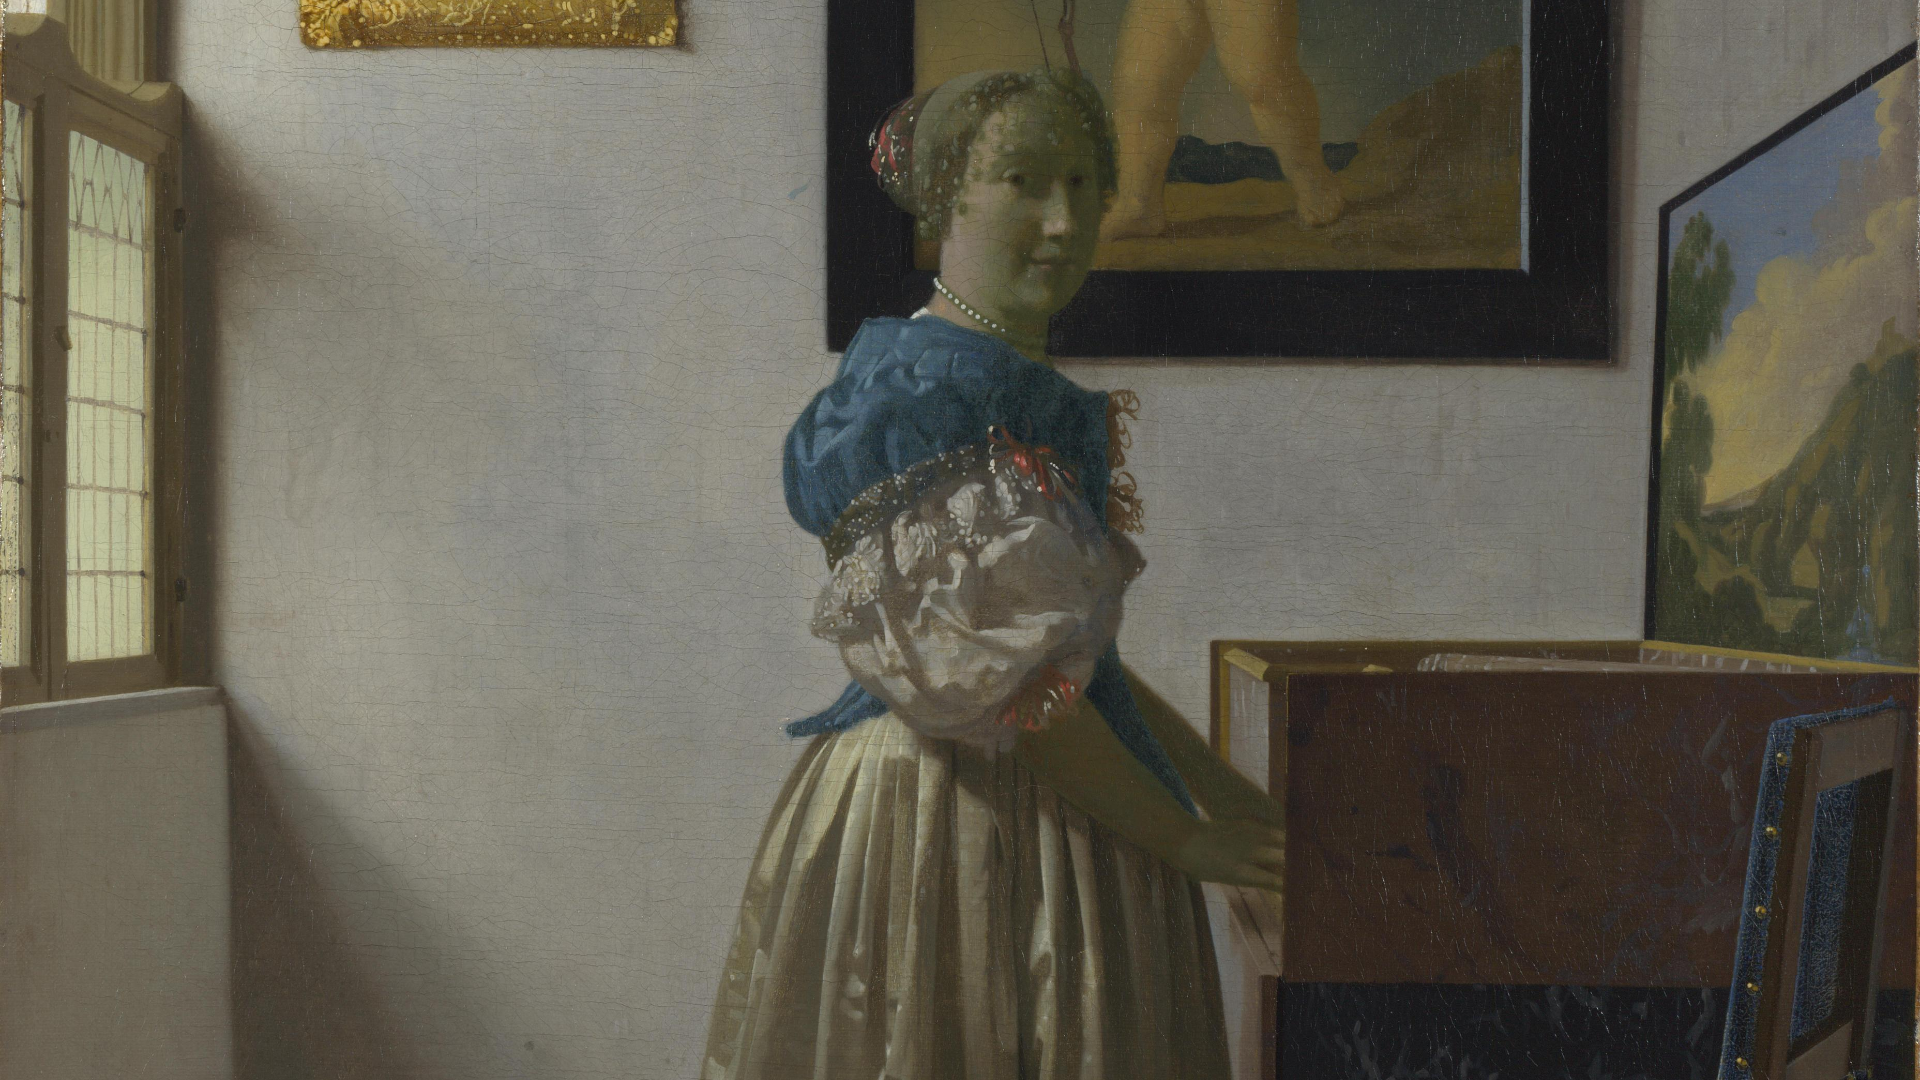 Genshin impact краски вермеера. Йоханнес Вермеер (1632-1675). Дама, стоящая у вирджиналя.